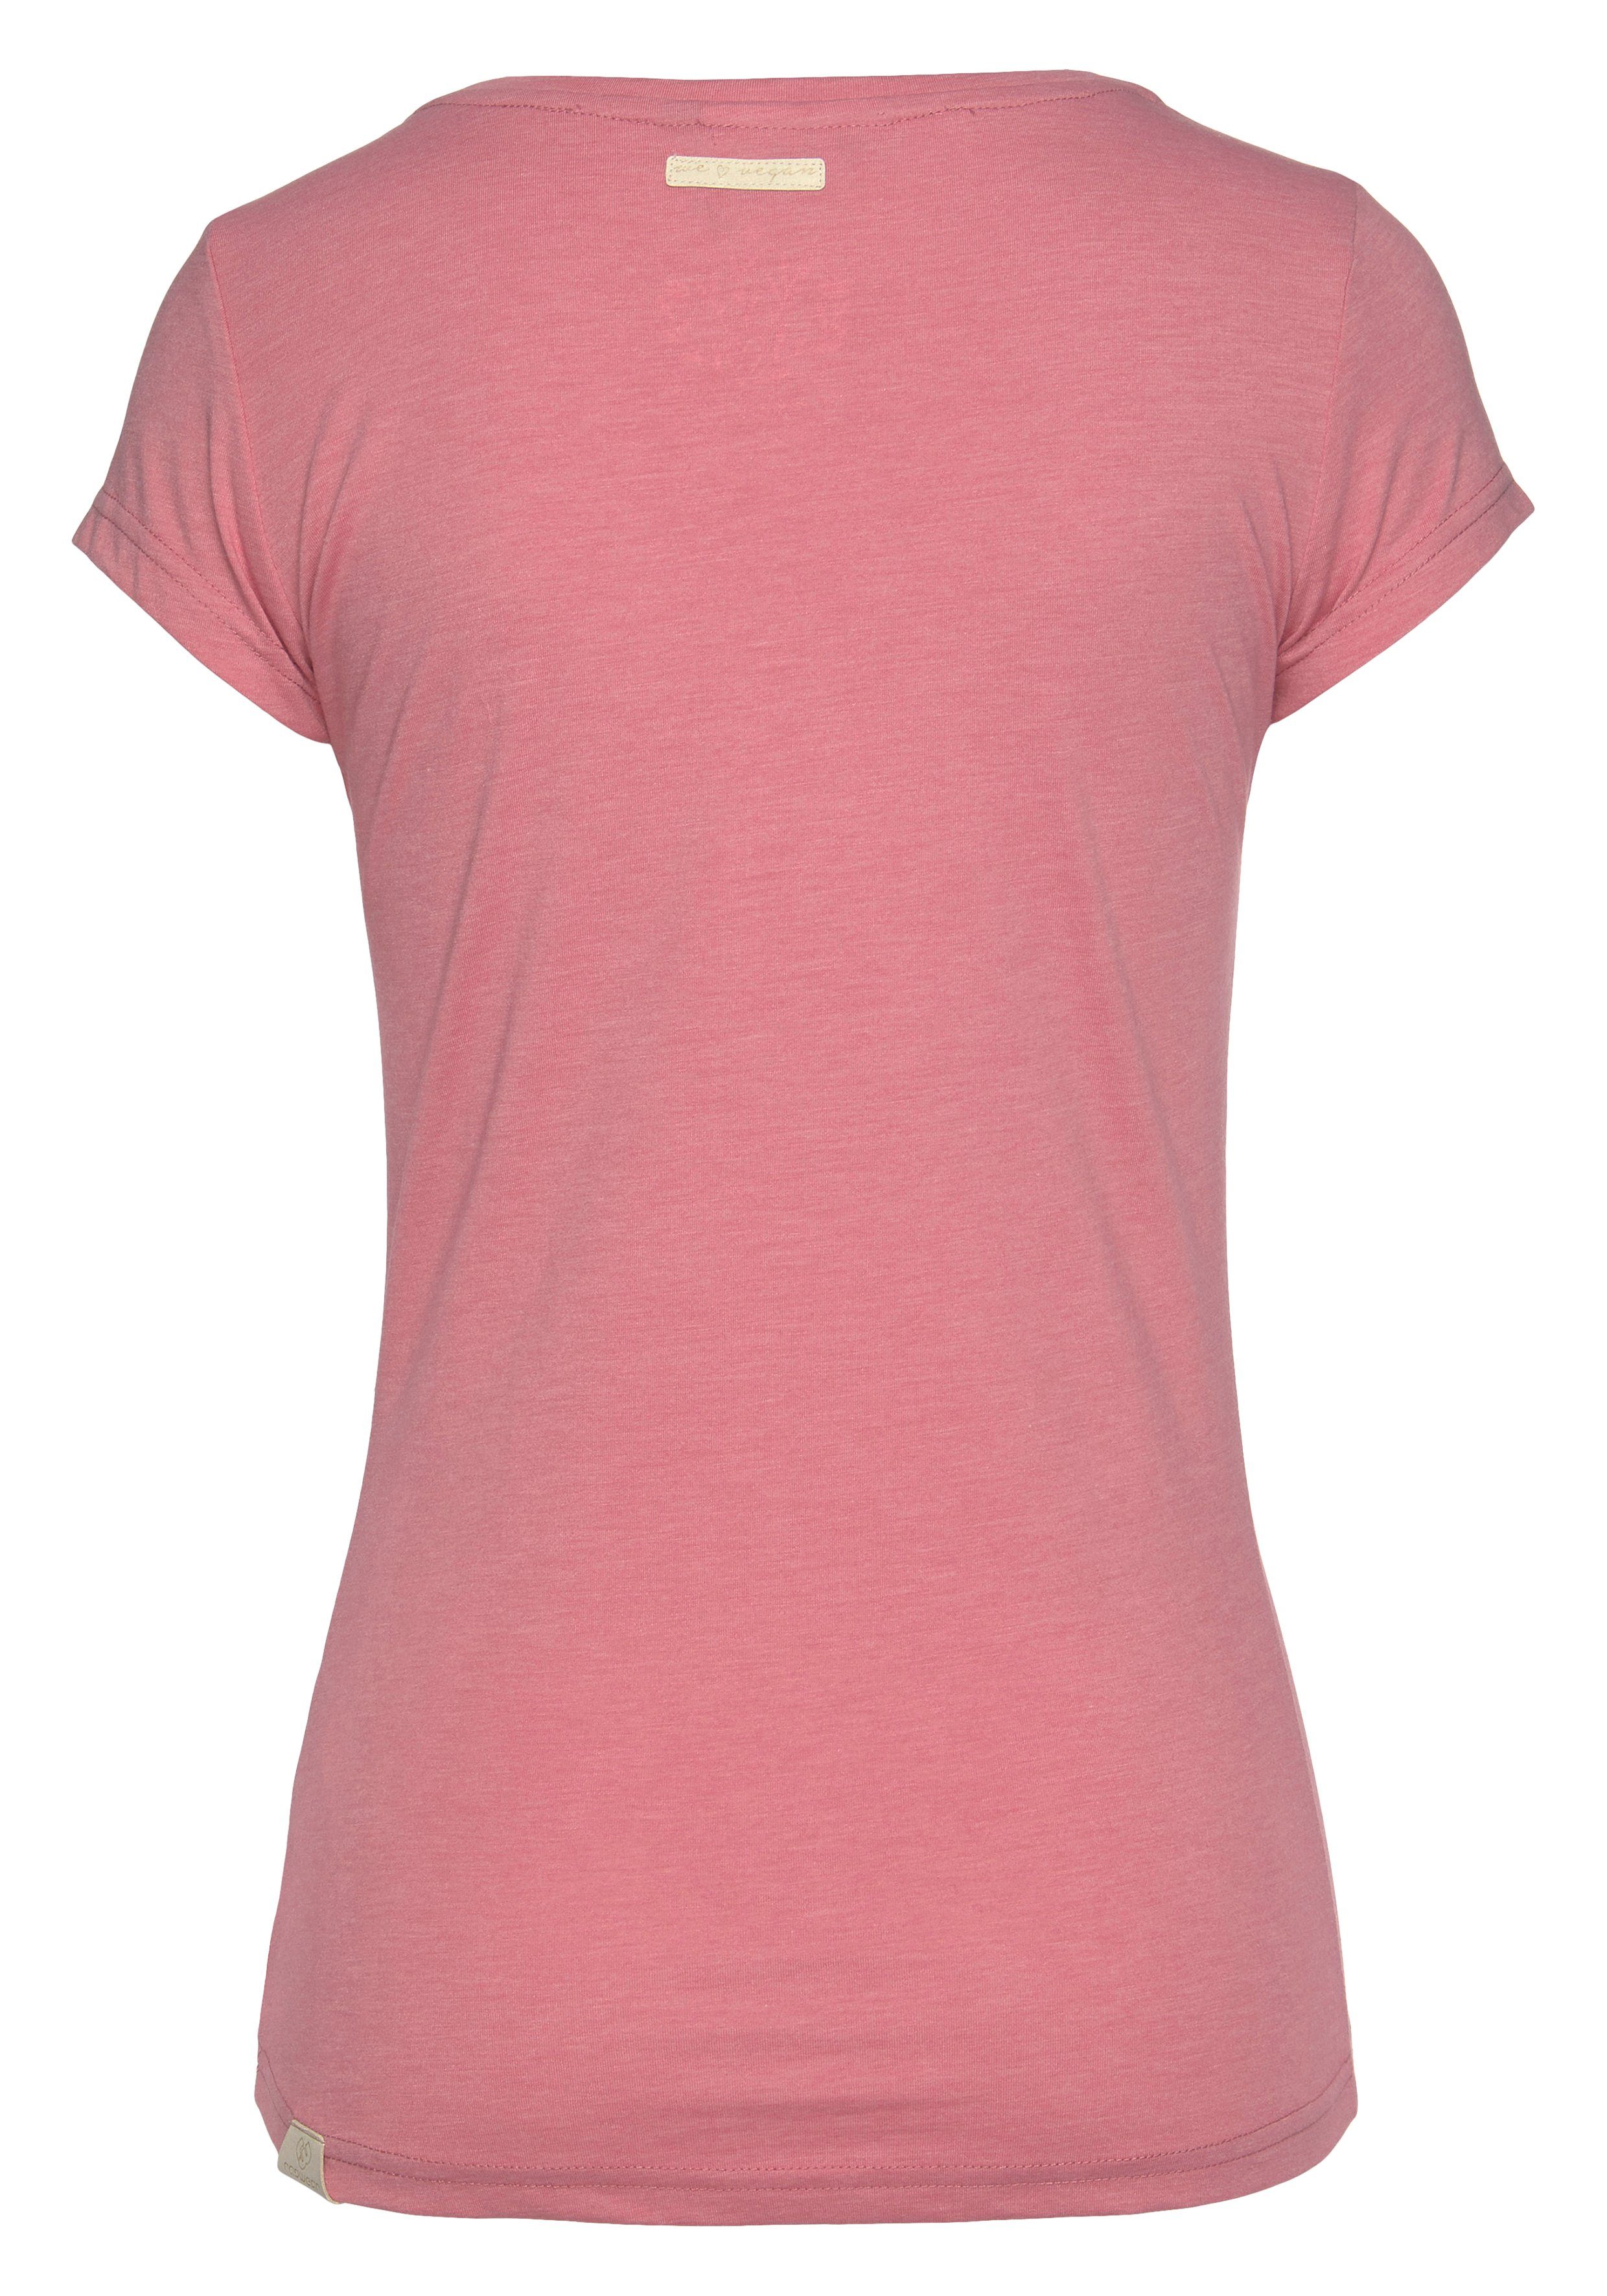 und T-Shirt in Ragwear Holzoptik pink Logoschriftzug mit MINT Zierknopf-Applikation natürlicher 4043 O